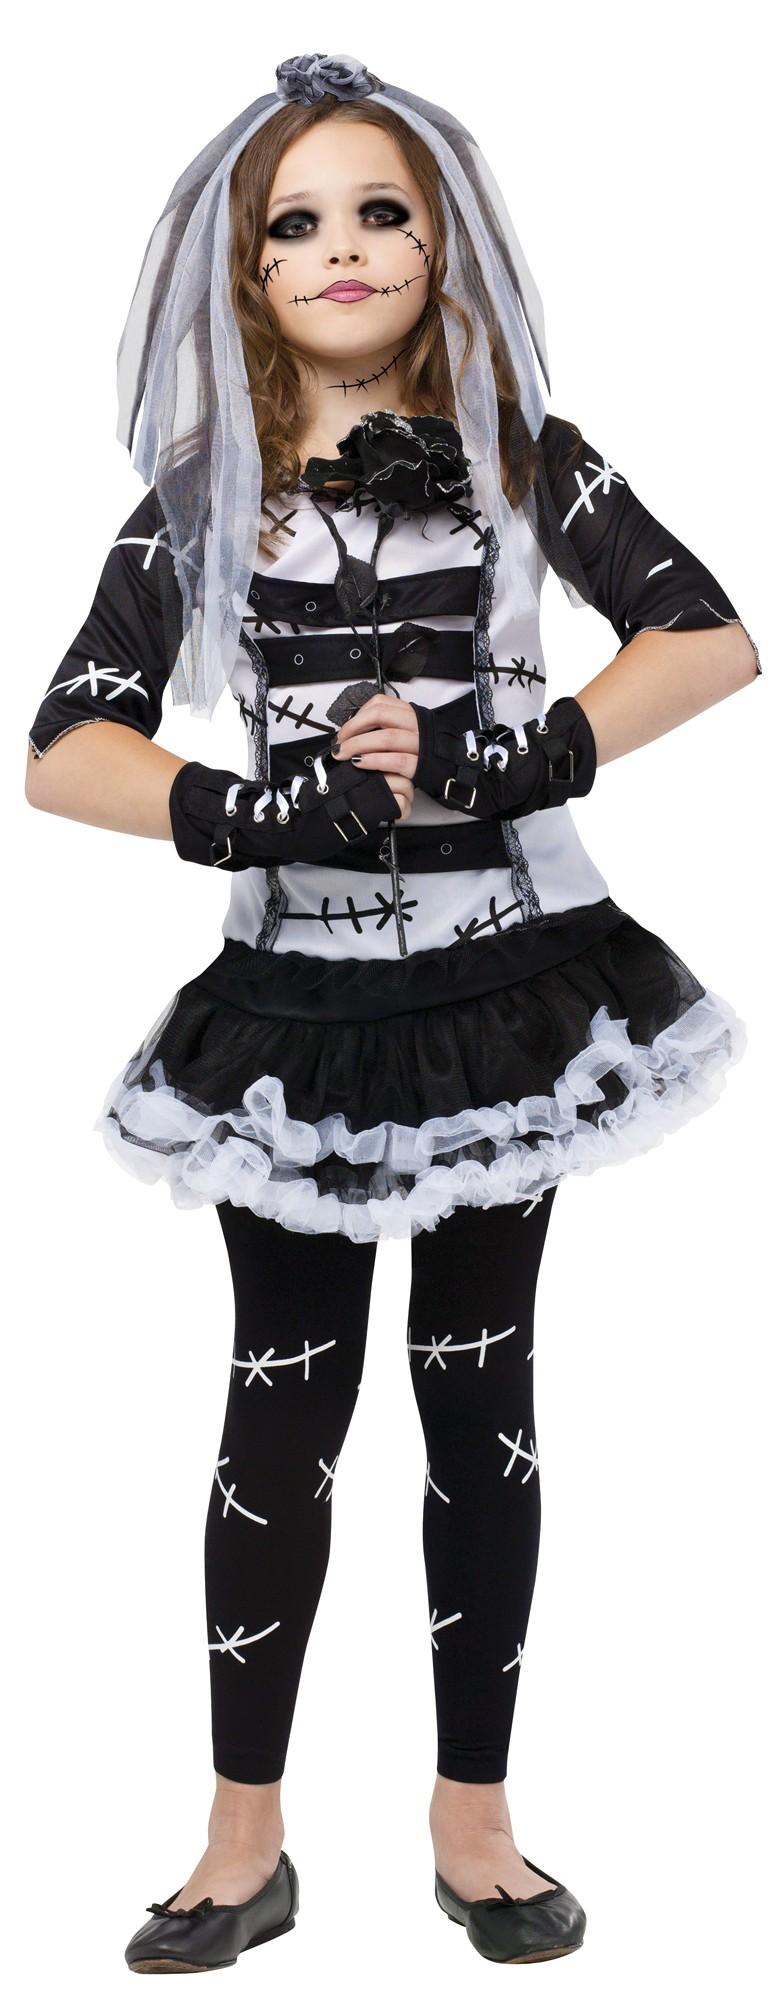 Monster Bride Costume | Halloween Costume